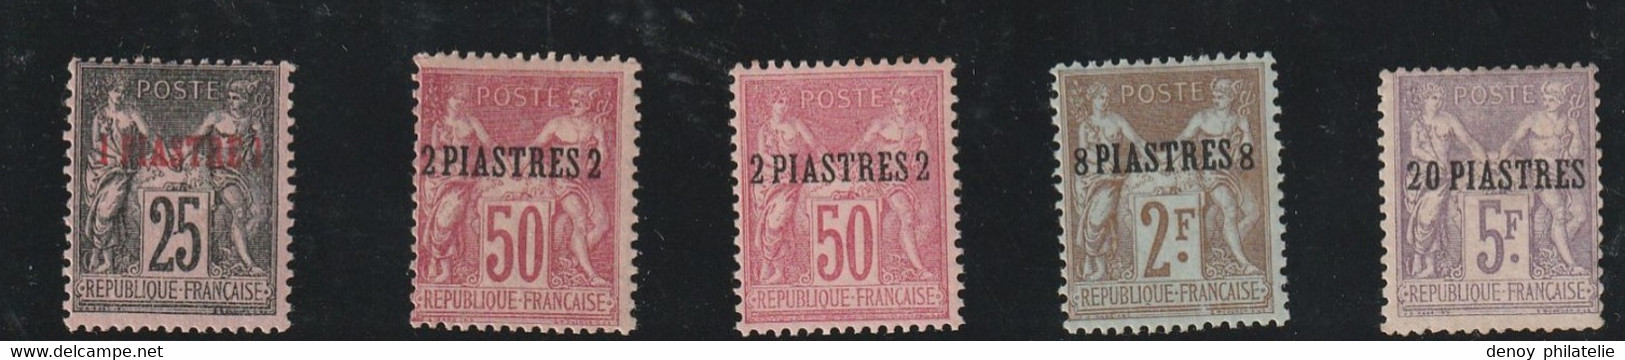 Levant N° 4 A 8 Neuf Charnière * Trés Propre 6 2 Dents Rouillée , Fraicheur Postale - Unused Stamps